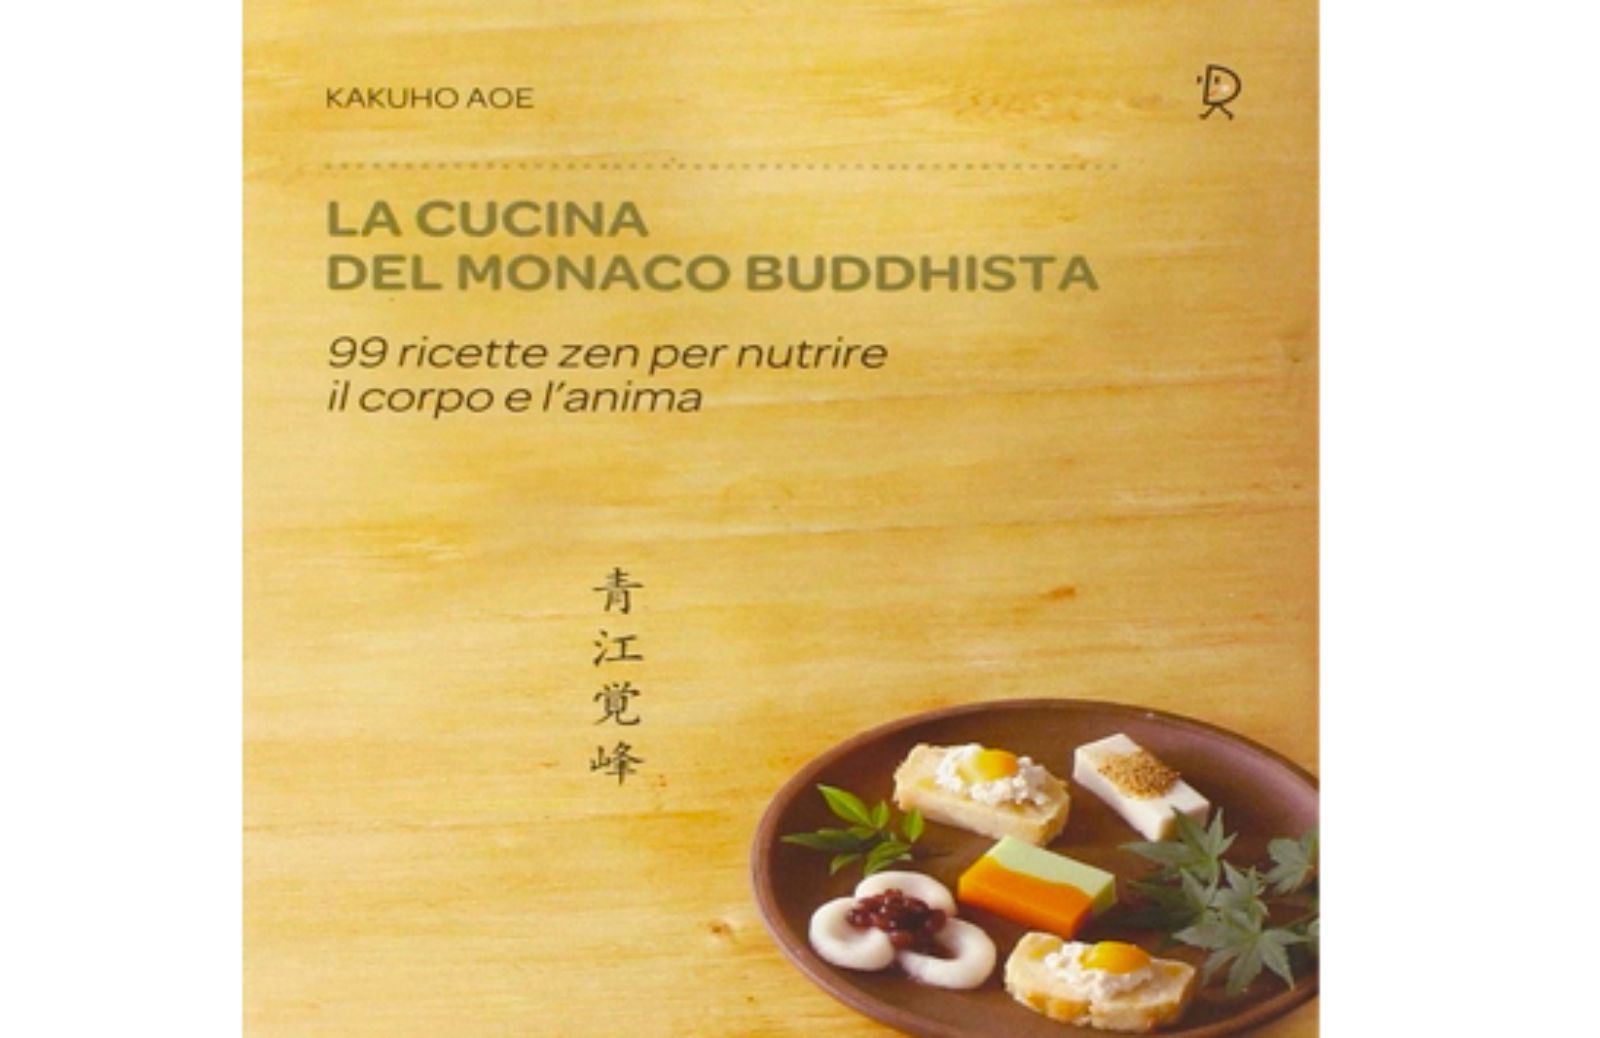 La cucina del monaco buddista in 99 ricette zen